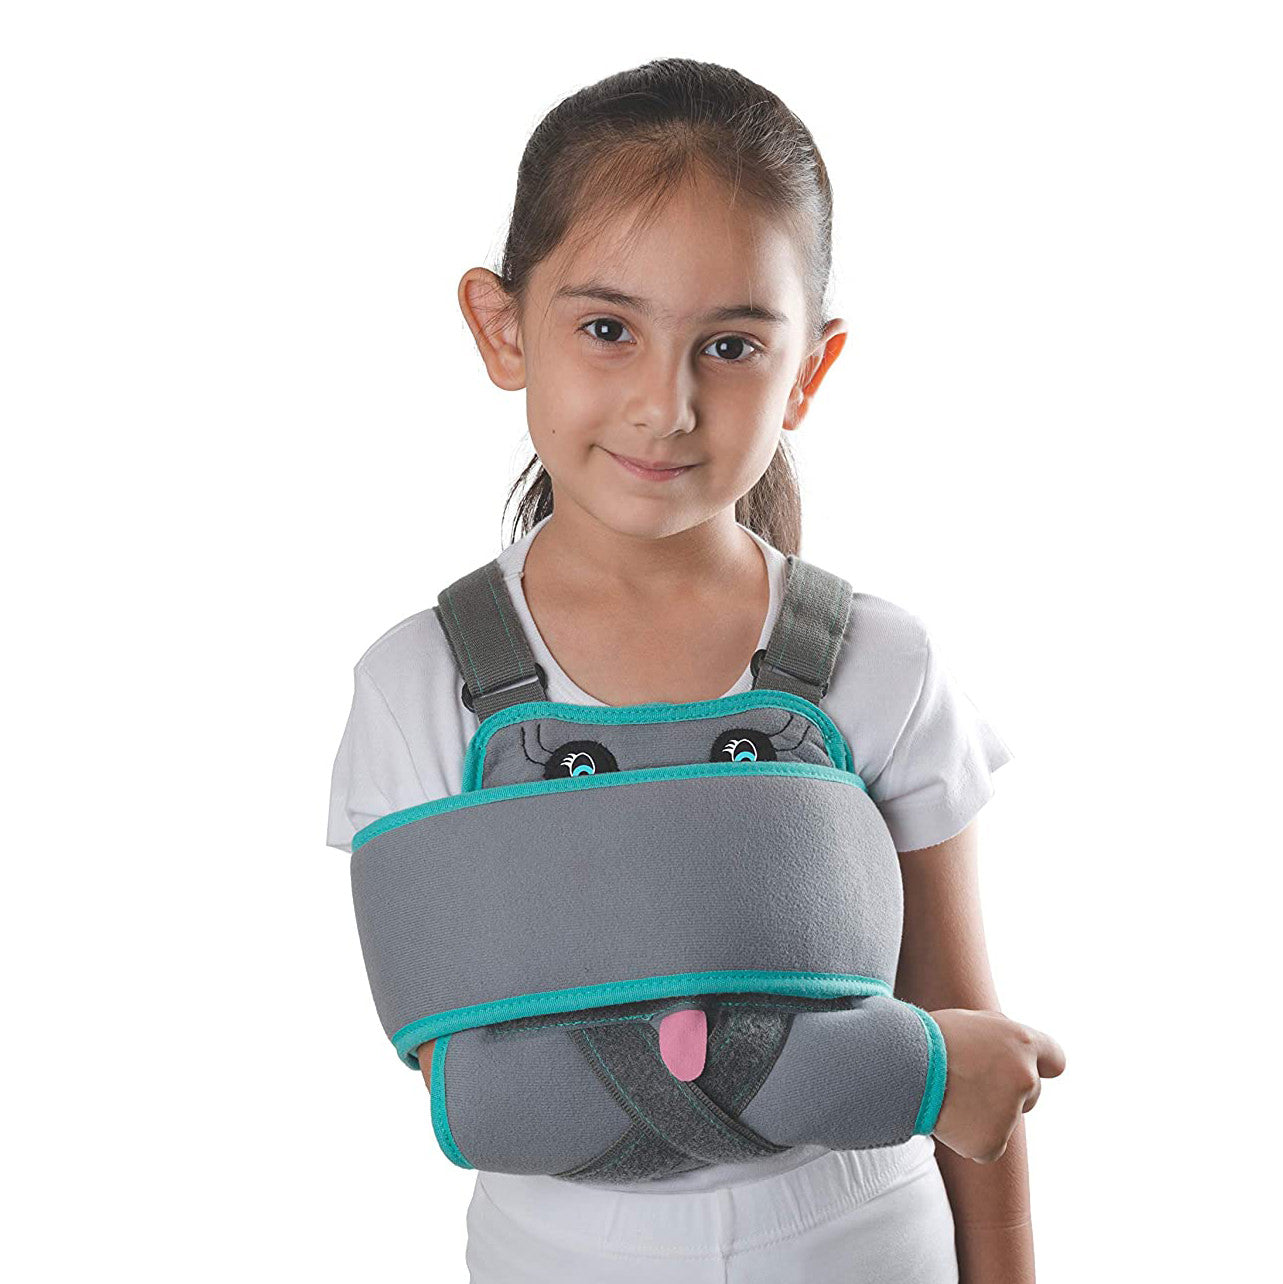 AHS Medical Arm Sling For Kids, Breathable Child Arm Support Shoulder Immobilizer With Adjustable Strap-1